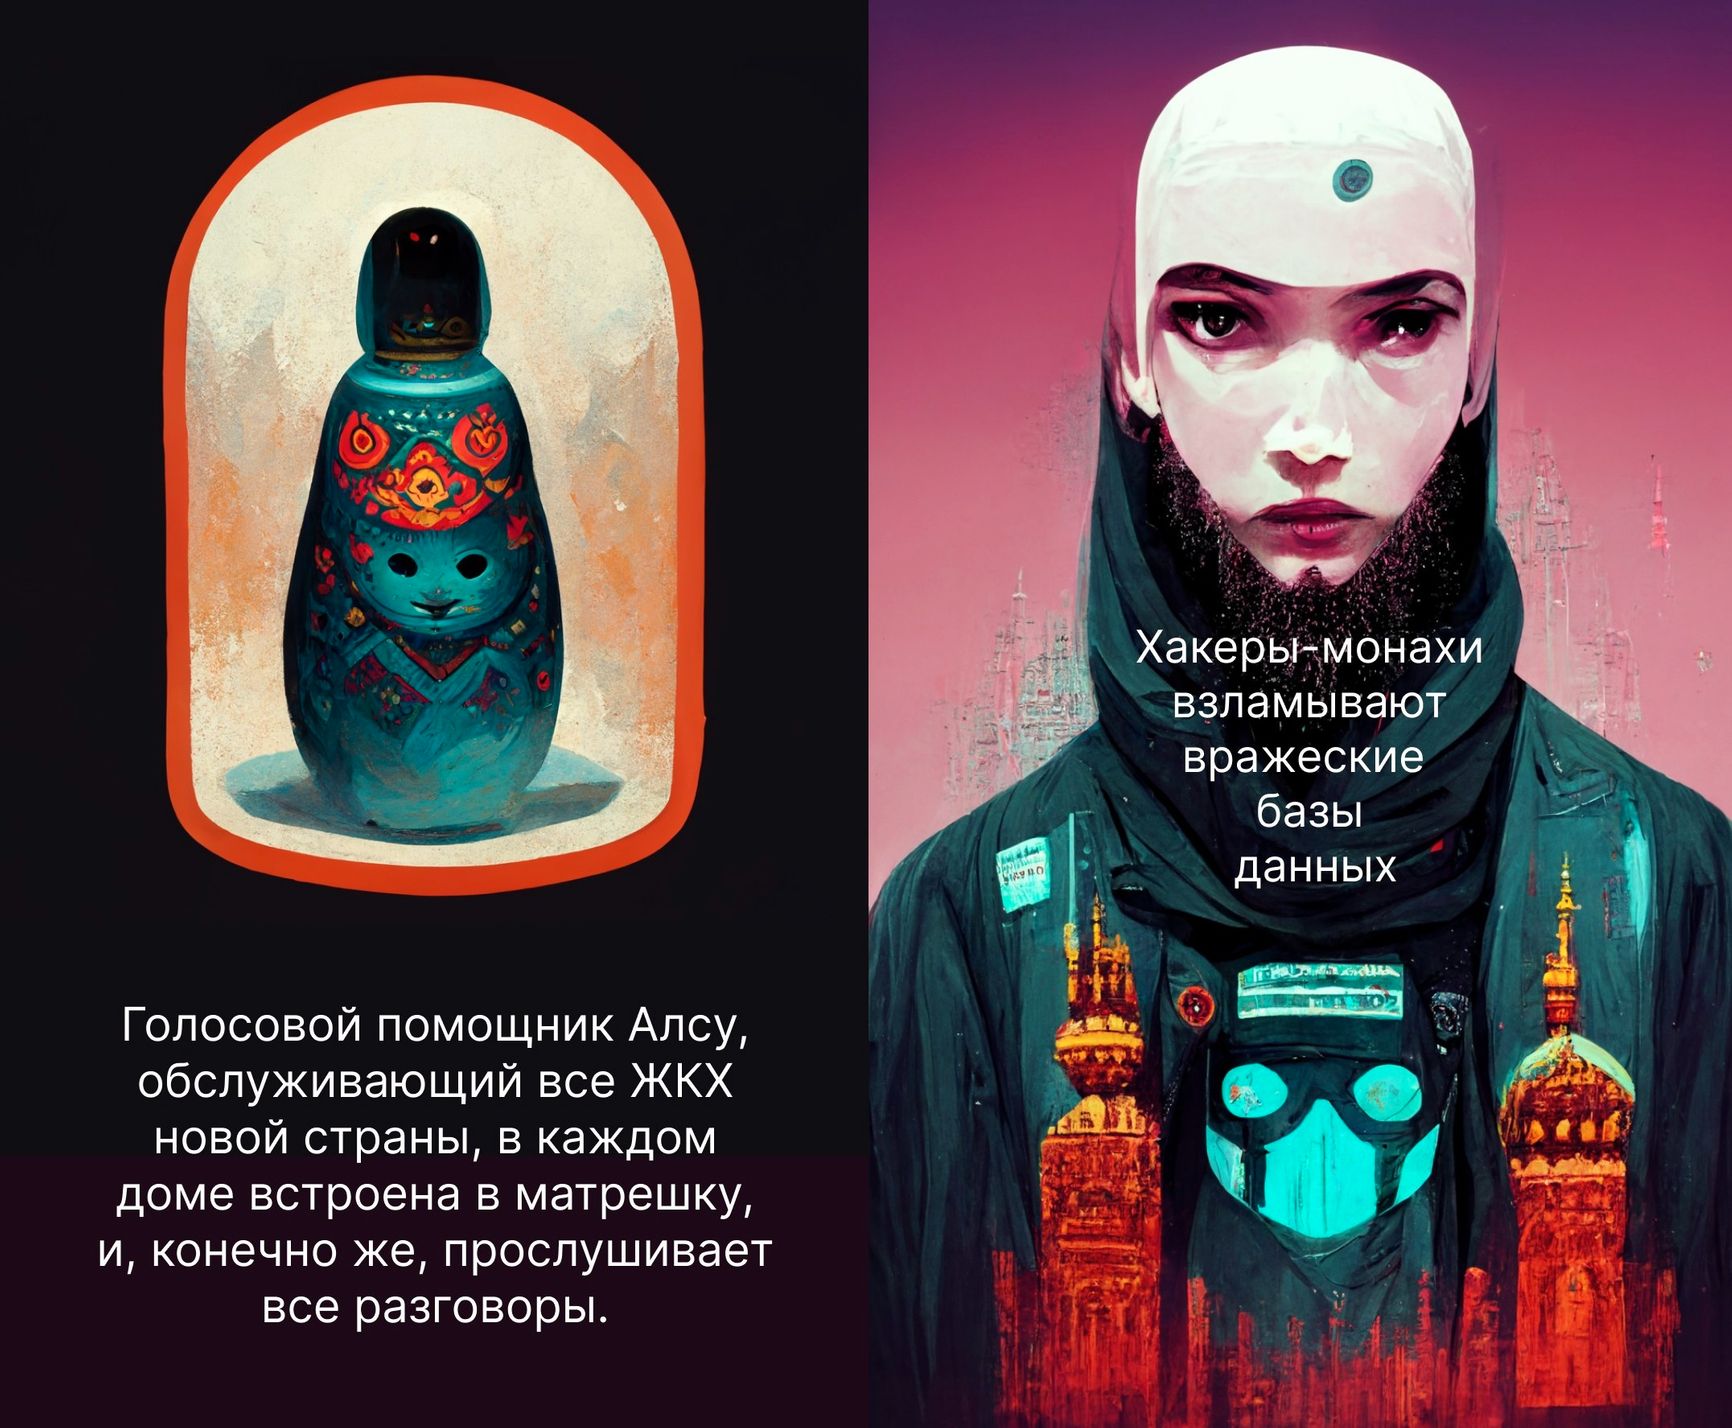 Иллюстрация: Dmitriy Soloveev, нейросеть midjourney